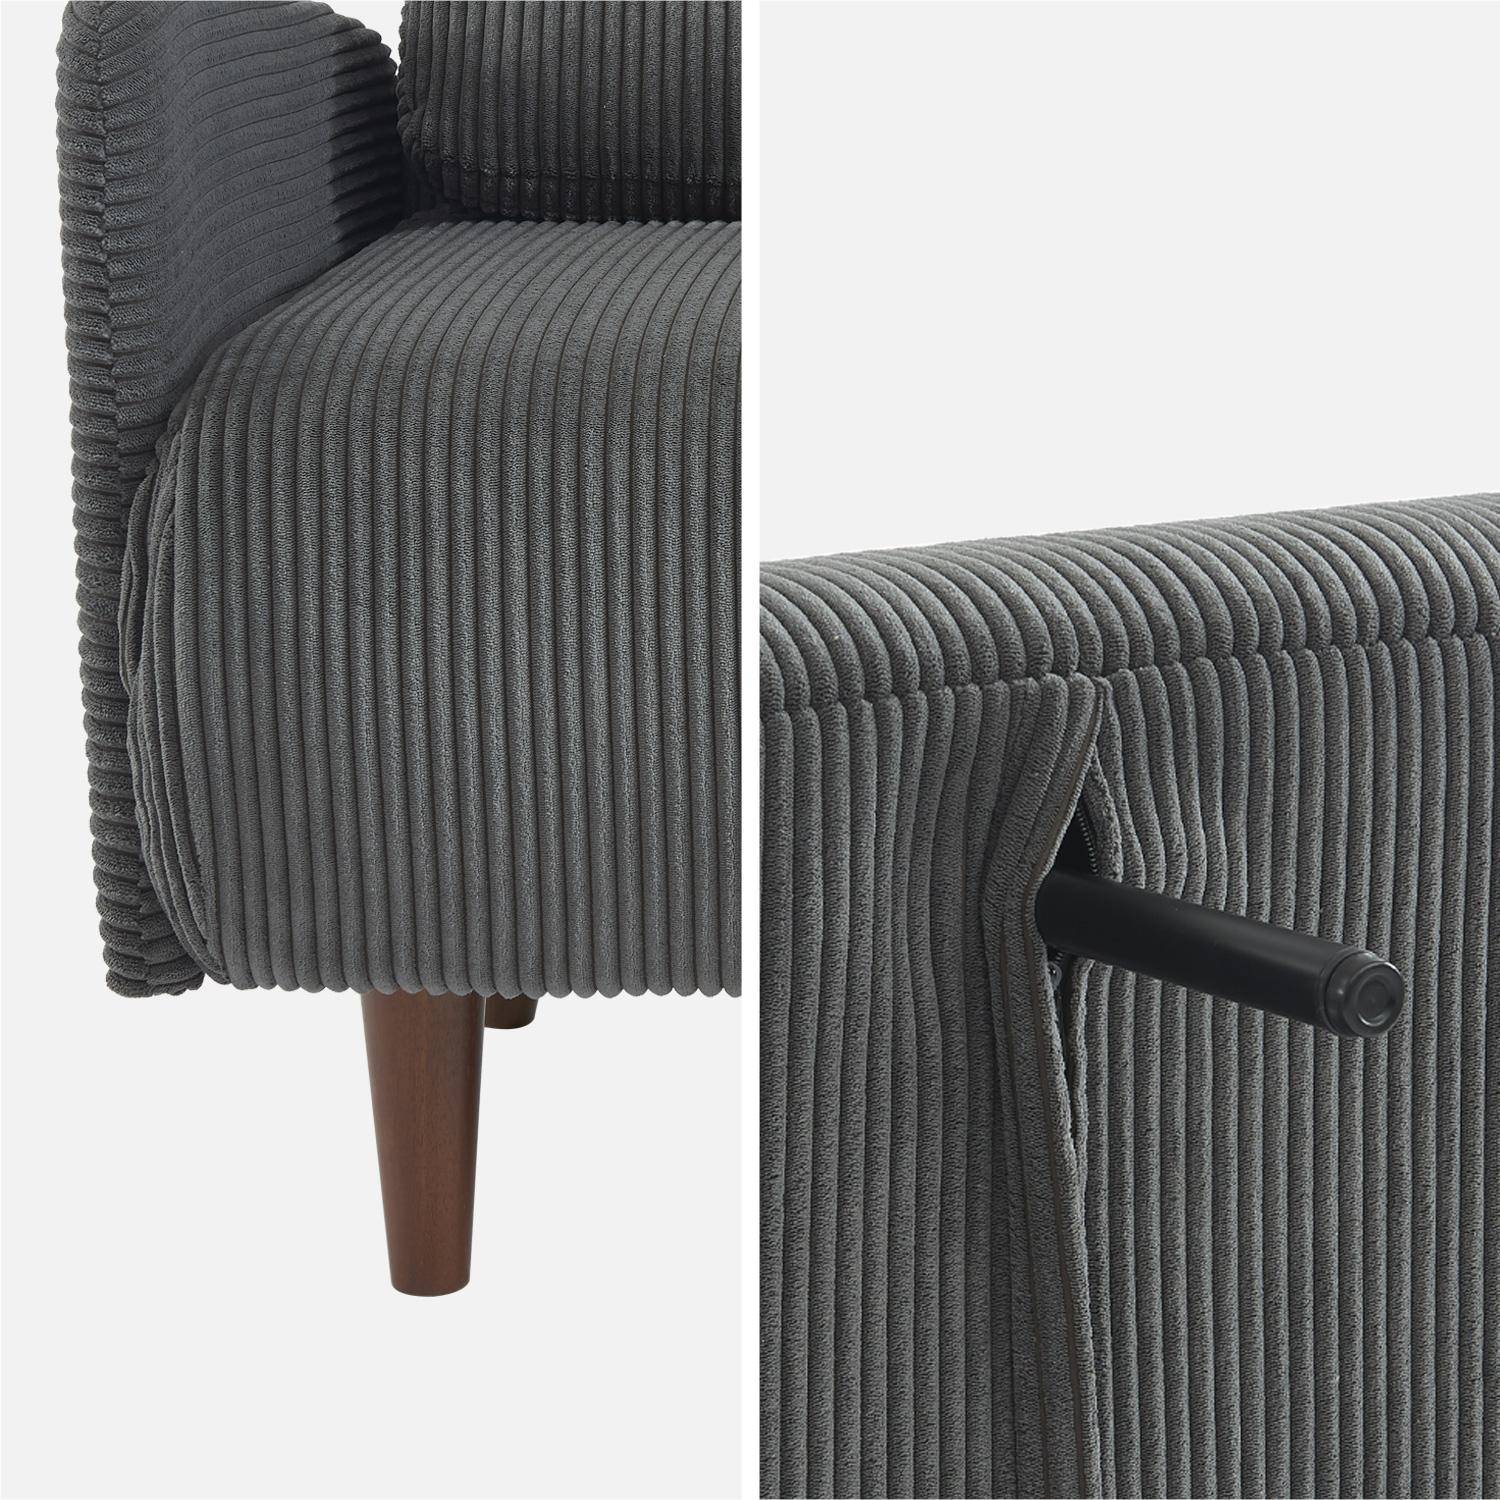 Skandinavisches 2-Sitzer-Sofa mit dunkelgrauem Cordbezug, Holzfüßen und verstellbarer Rückenlehne - Panam,sweeek,Photo7